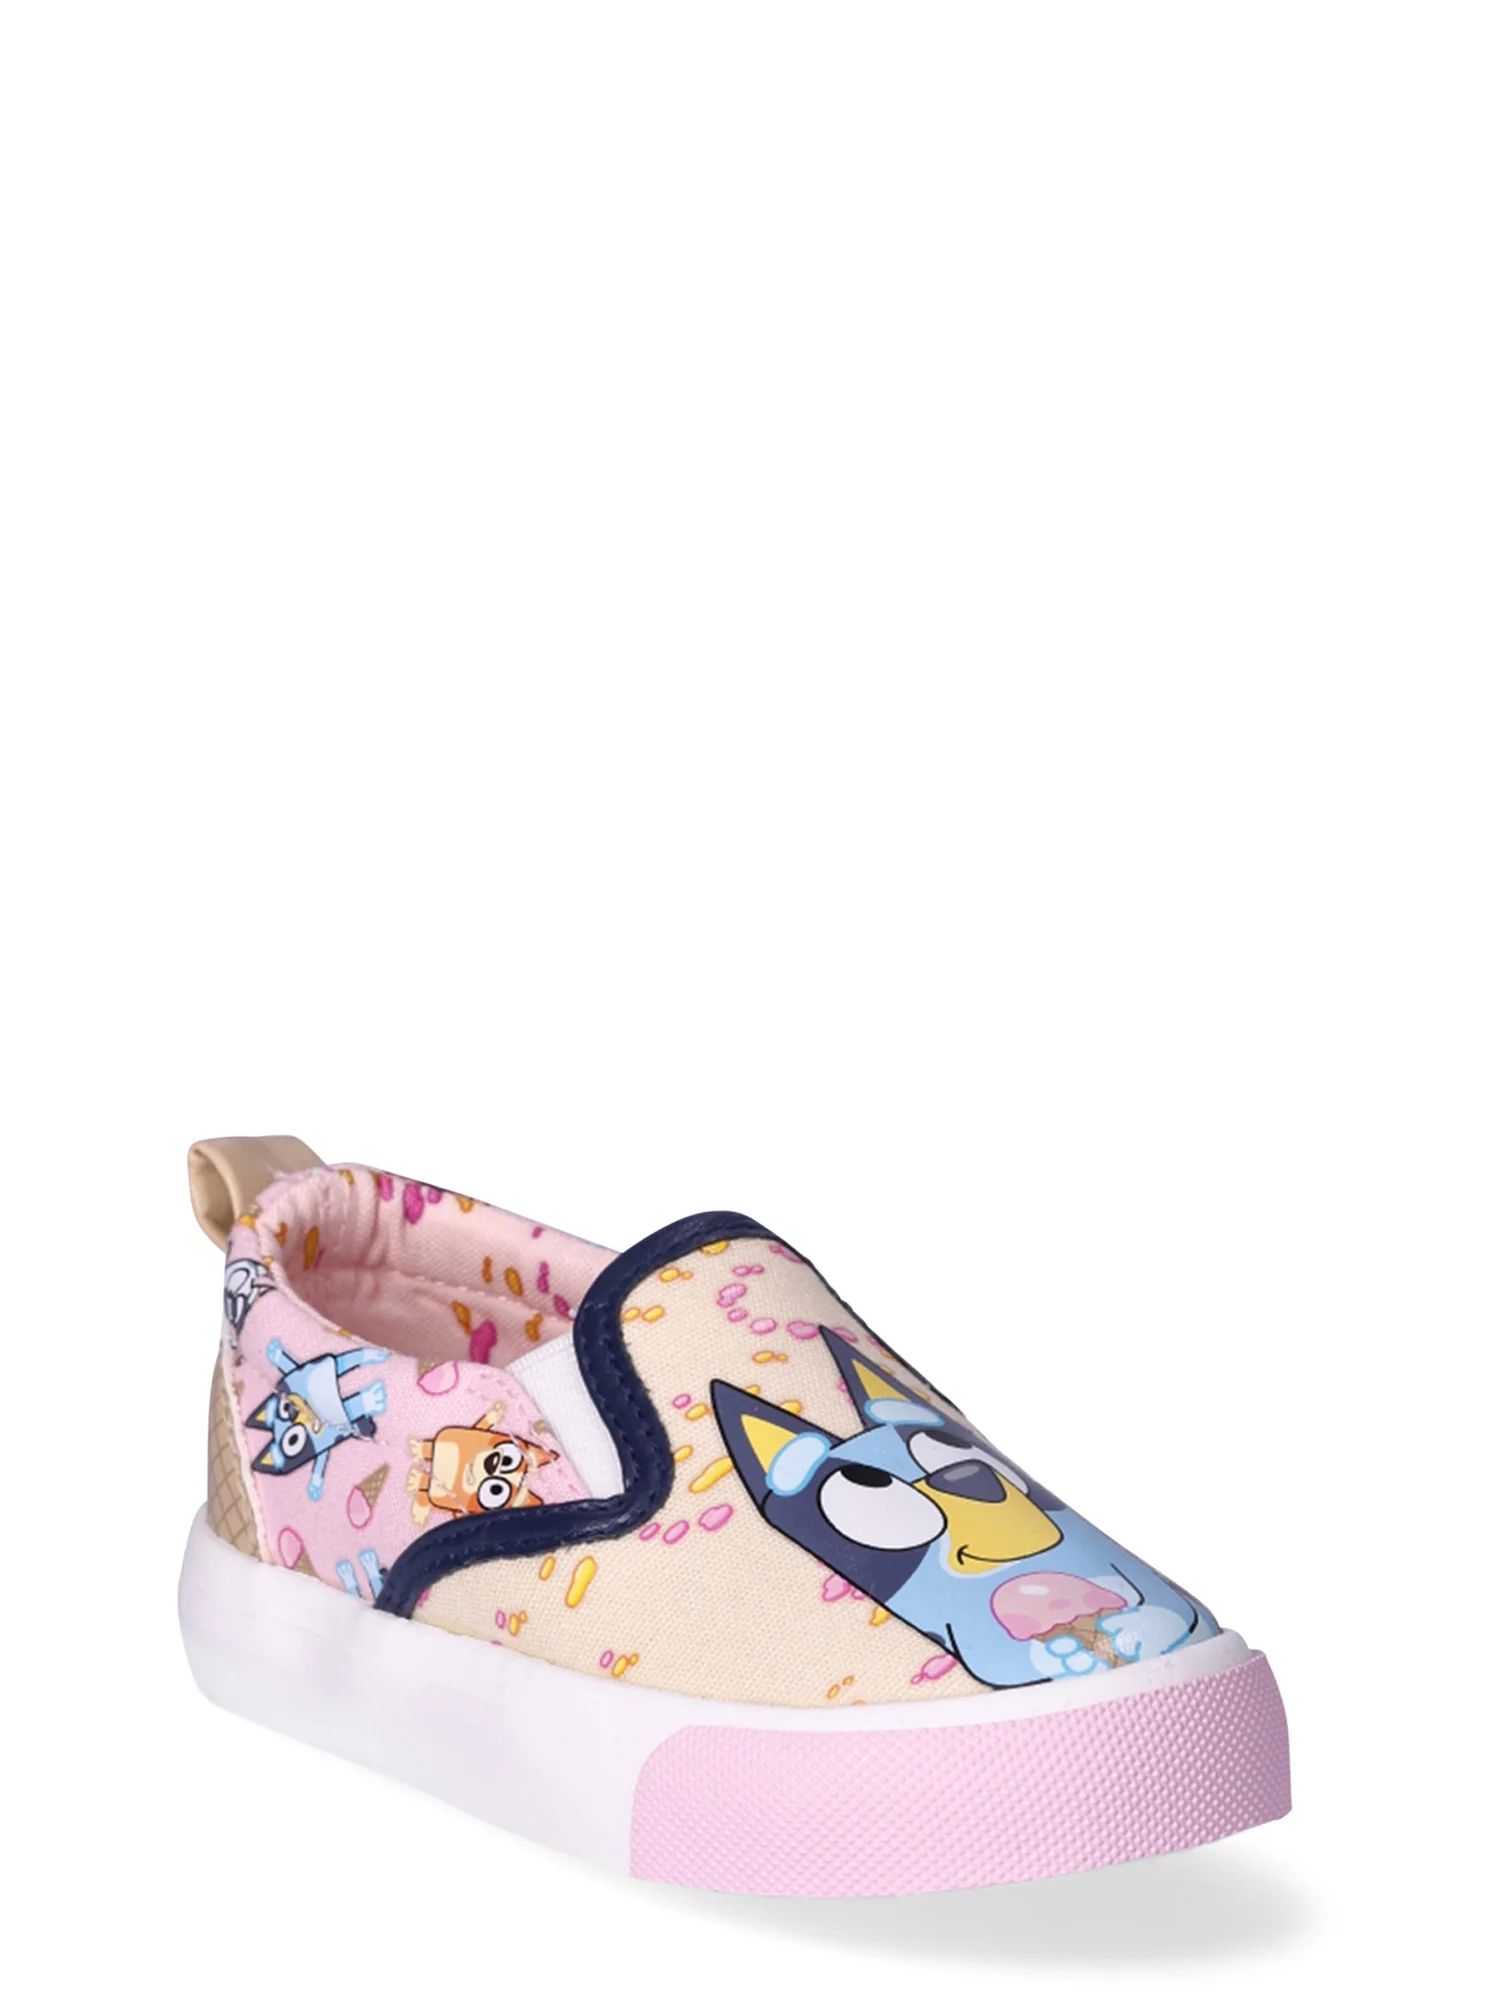 Bluey Toddler Girls’ Low-Top Slip-On Sneakers, Sizes 7-1 | Walmart (US)